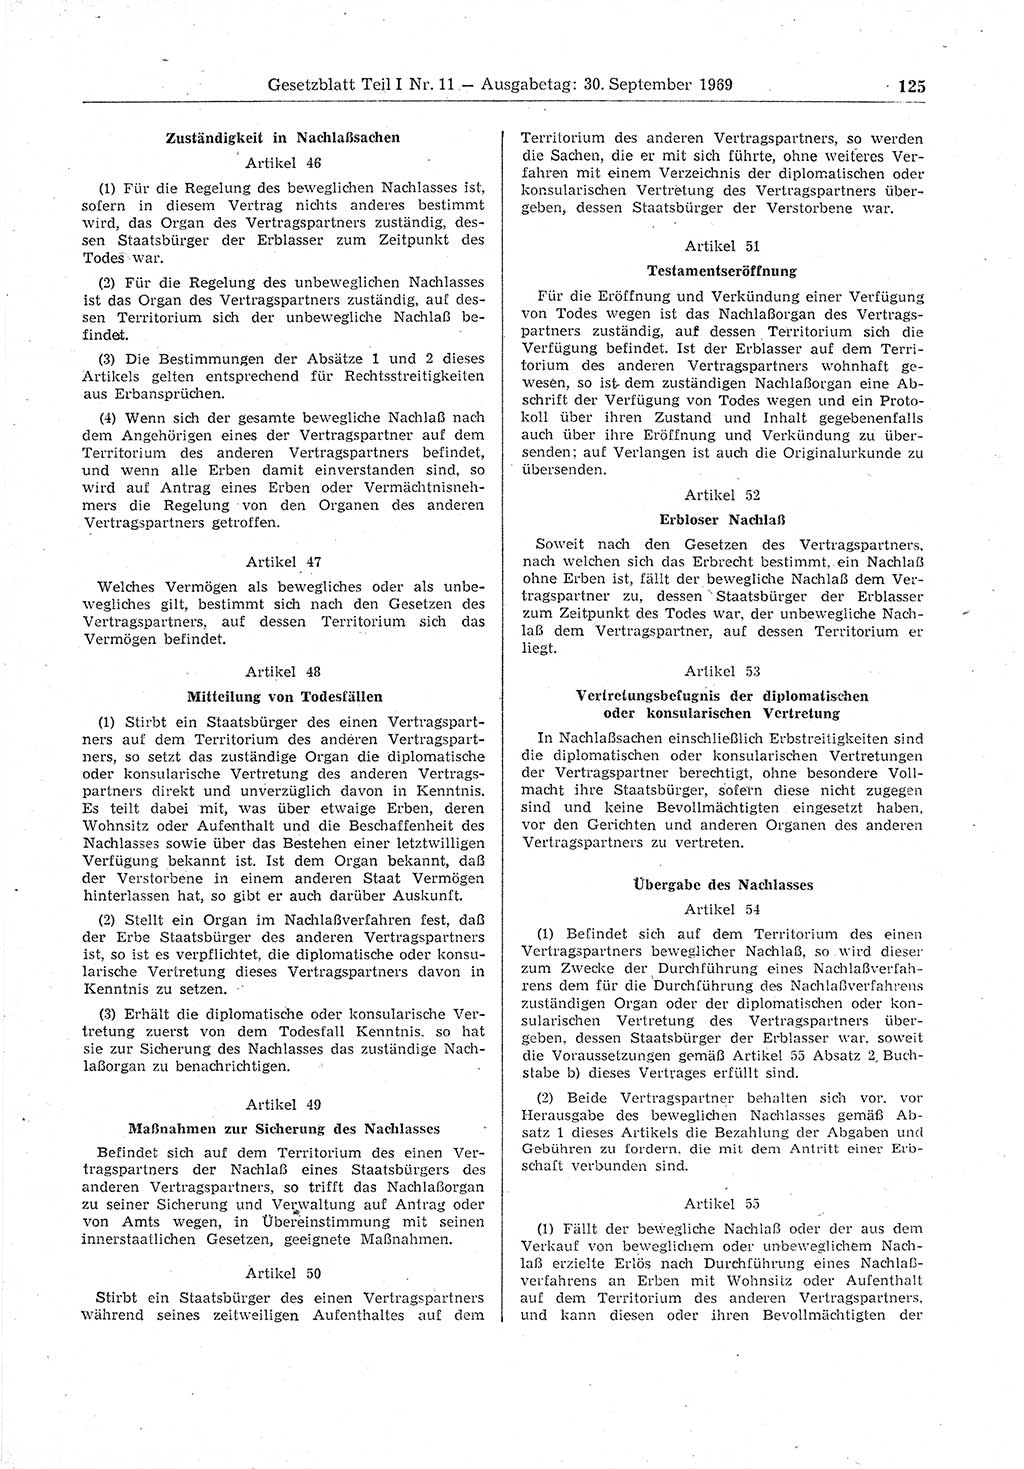 Gesetzblatt (GBl.) der Deutschen Demokratischen Republik (DDR) Teil Ⅰ 1969, Seite 125 (GBl. DDR Ⅰ 1969, S. 125)